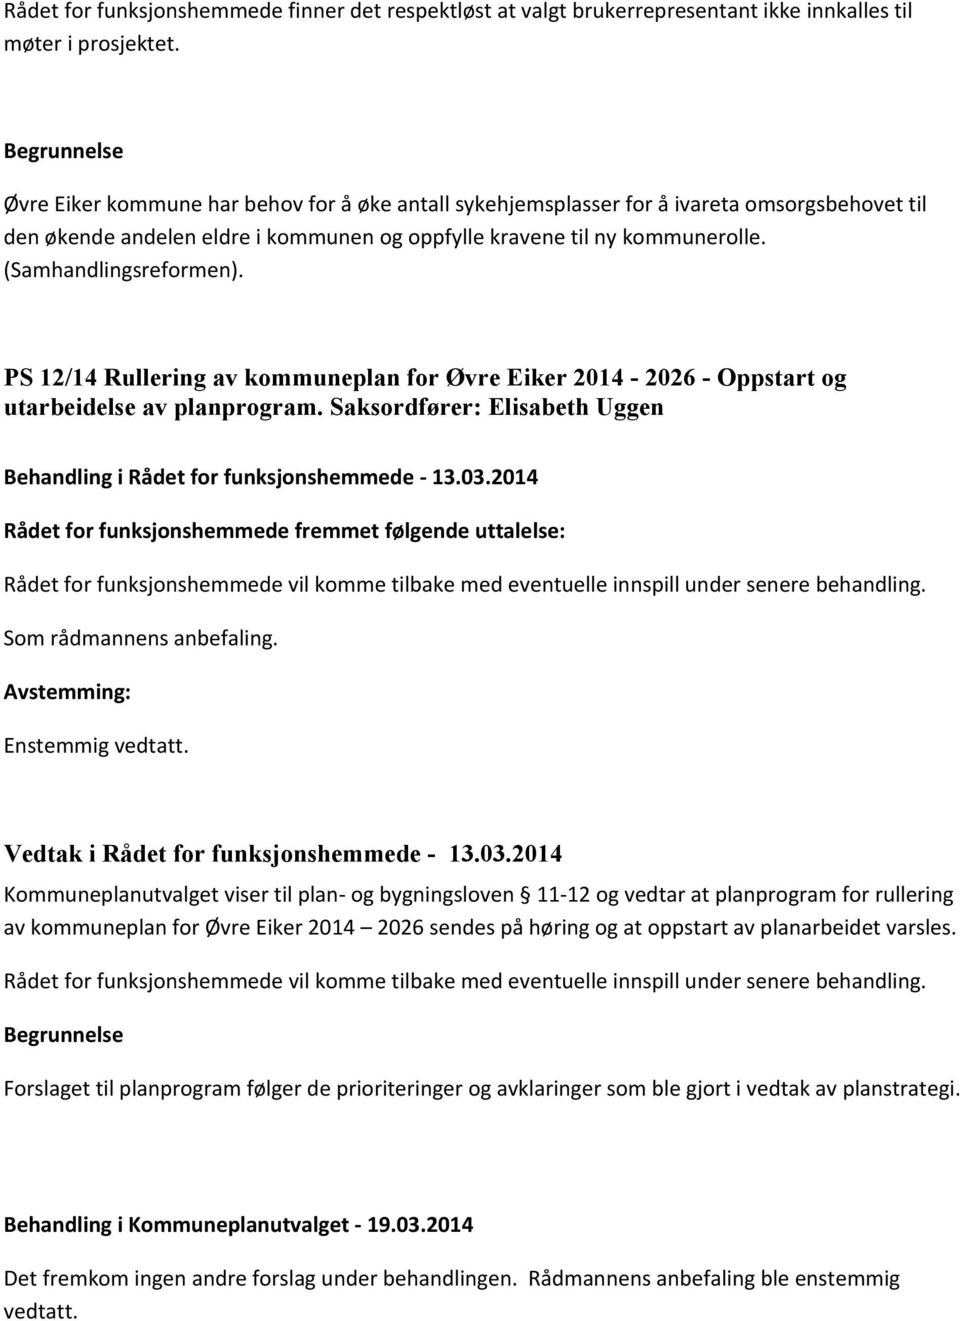 PS 12/14 Rullering av kommuneplan for Øvre Eiker 2014-2026 - Oppstart og utarbeidelse av planprogram.